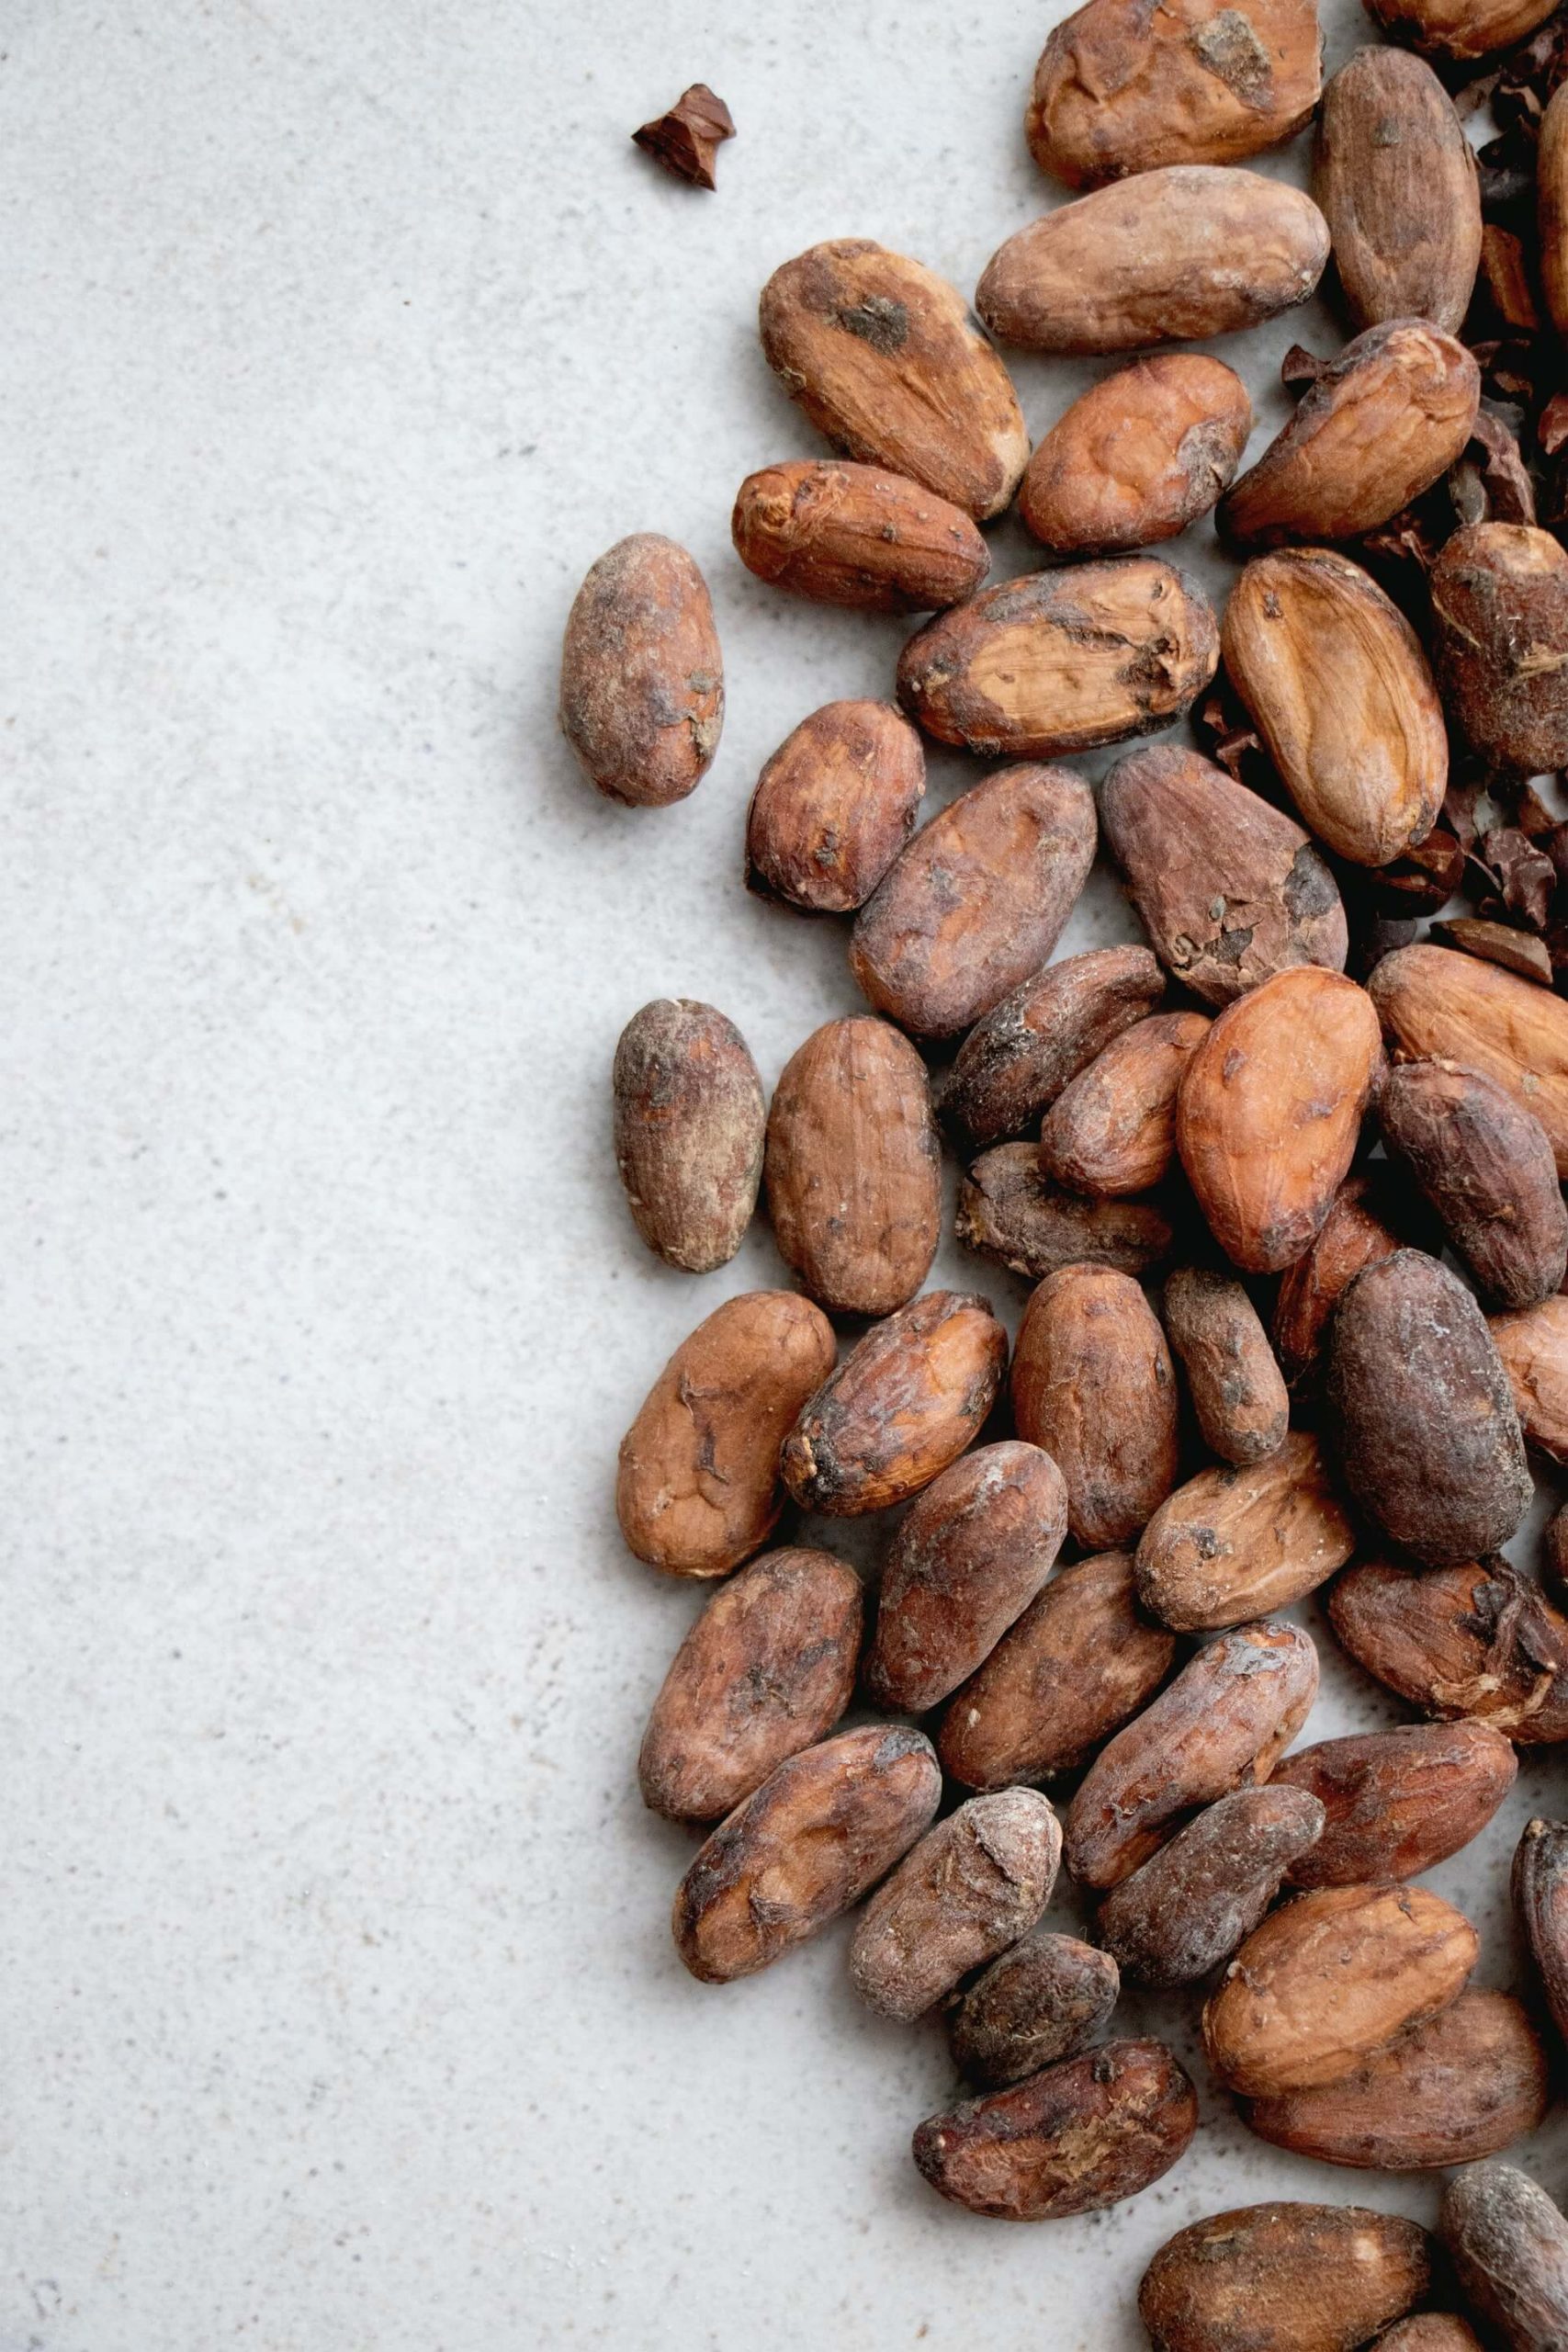 Drogocenne ziarna kakaowca w kosmetyce – co można z nich uzyskać?